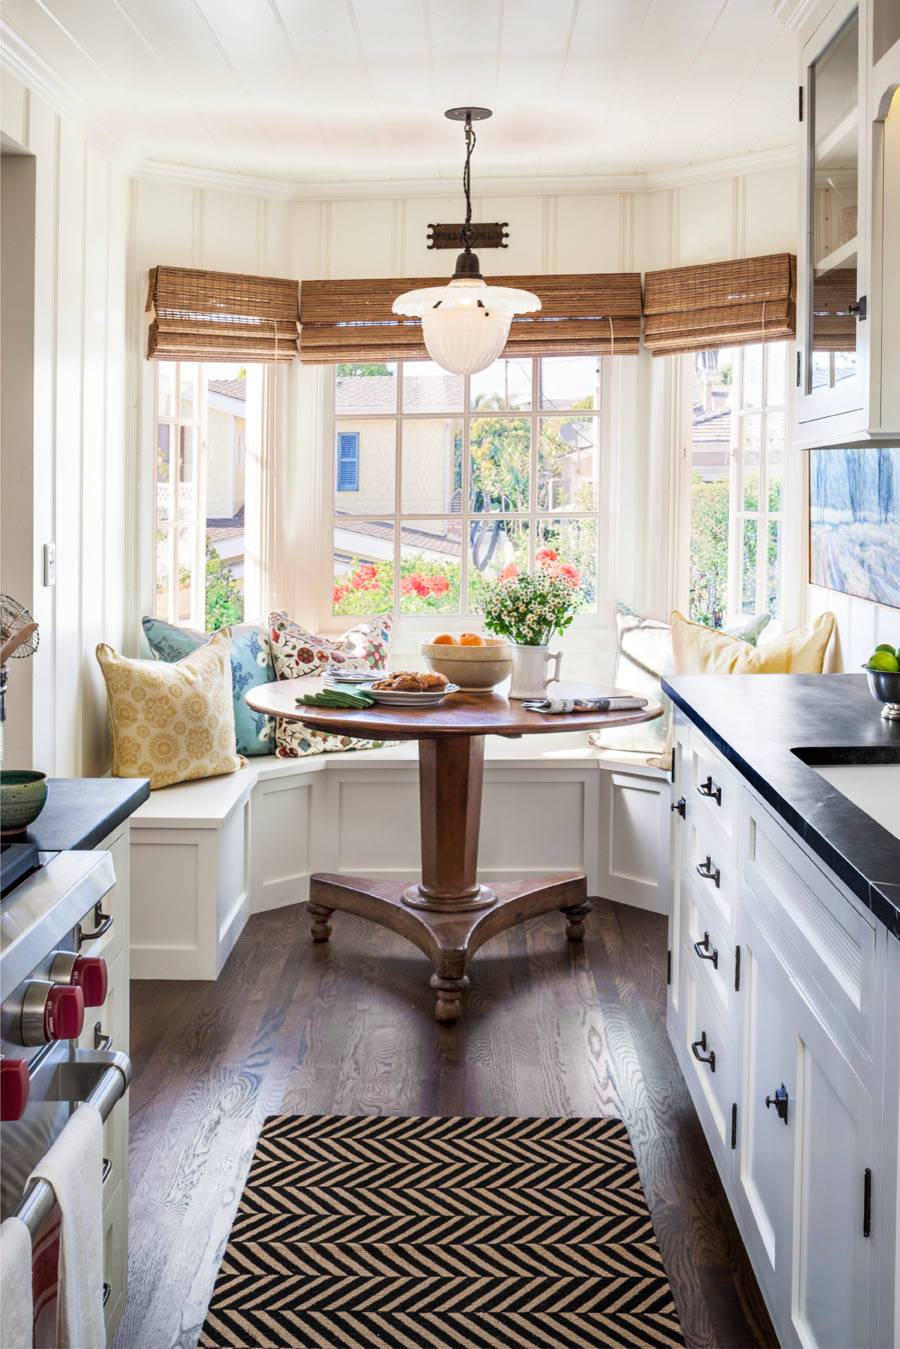 Кухня с мойкой у окна: 100 фото лучших идей - дизайн интерьера